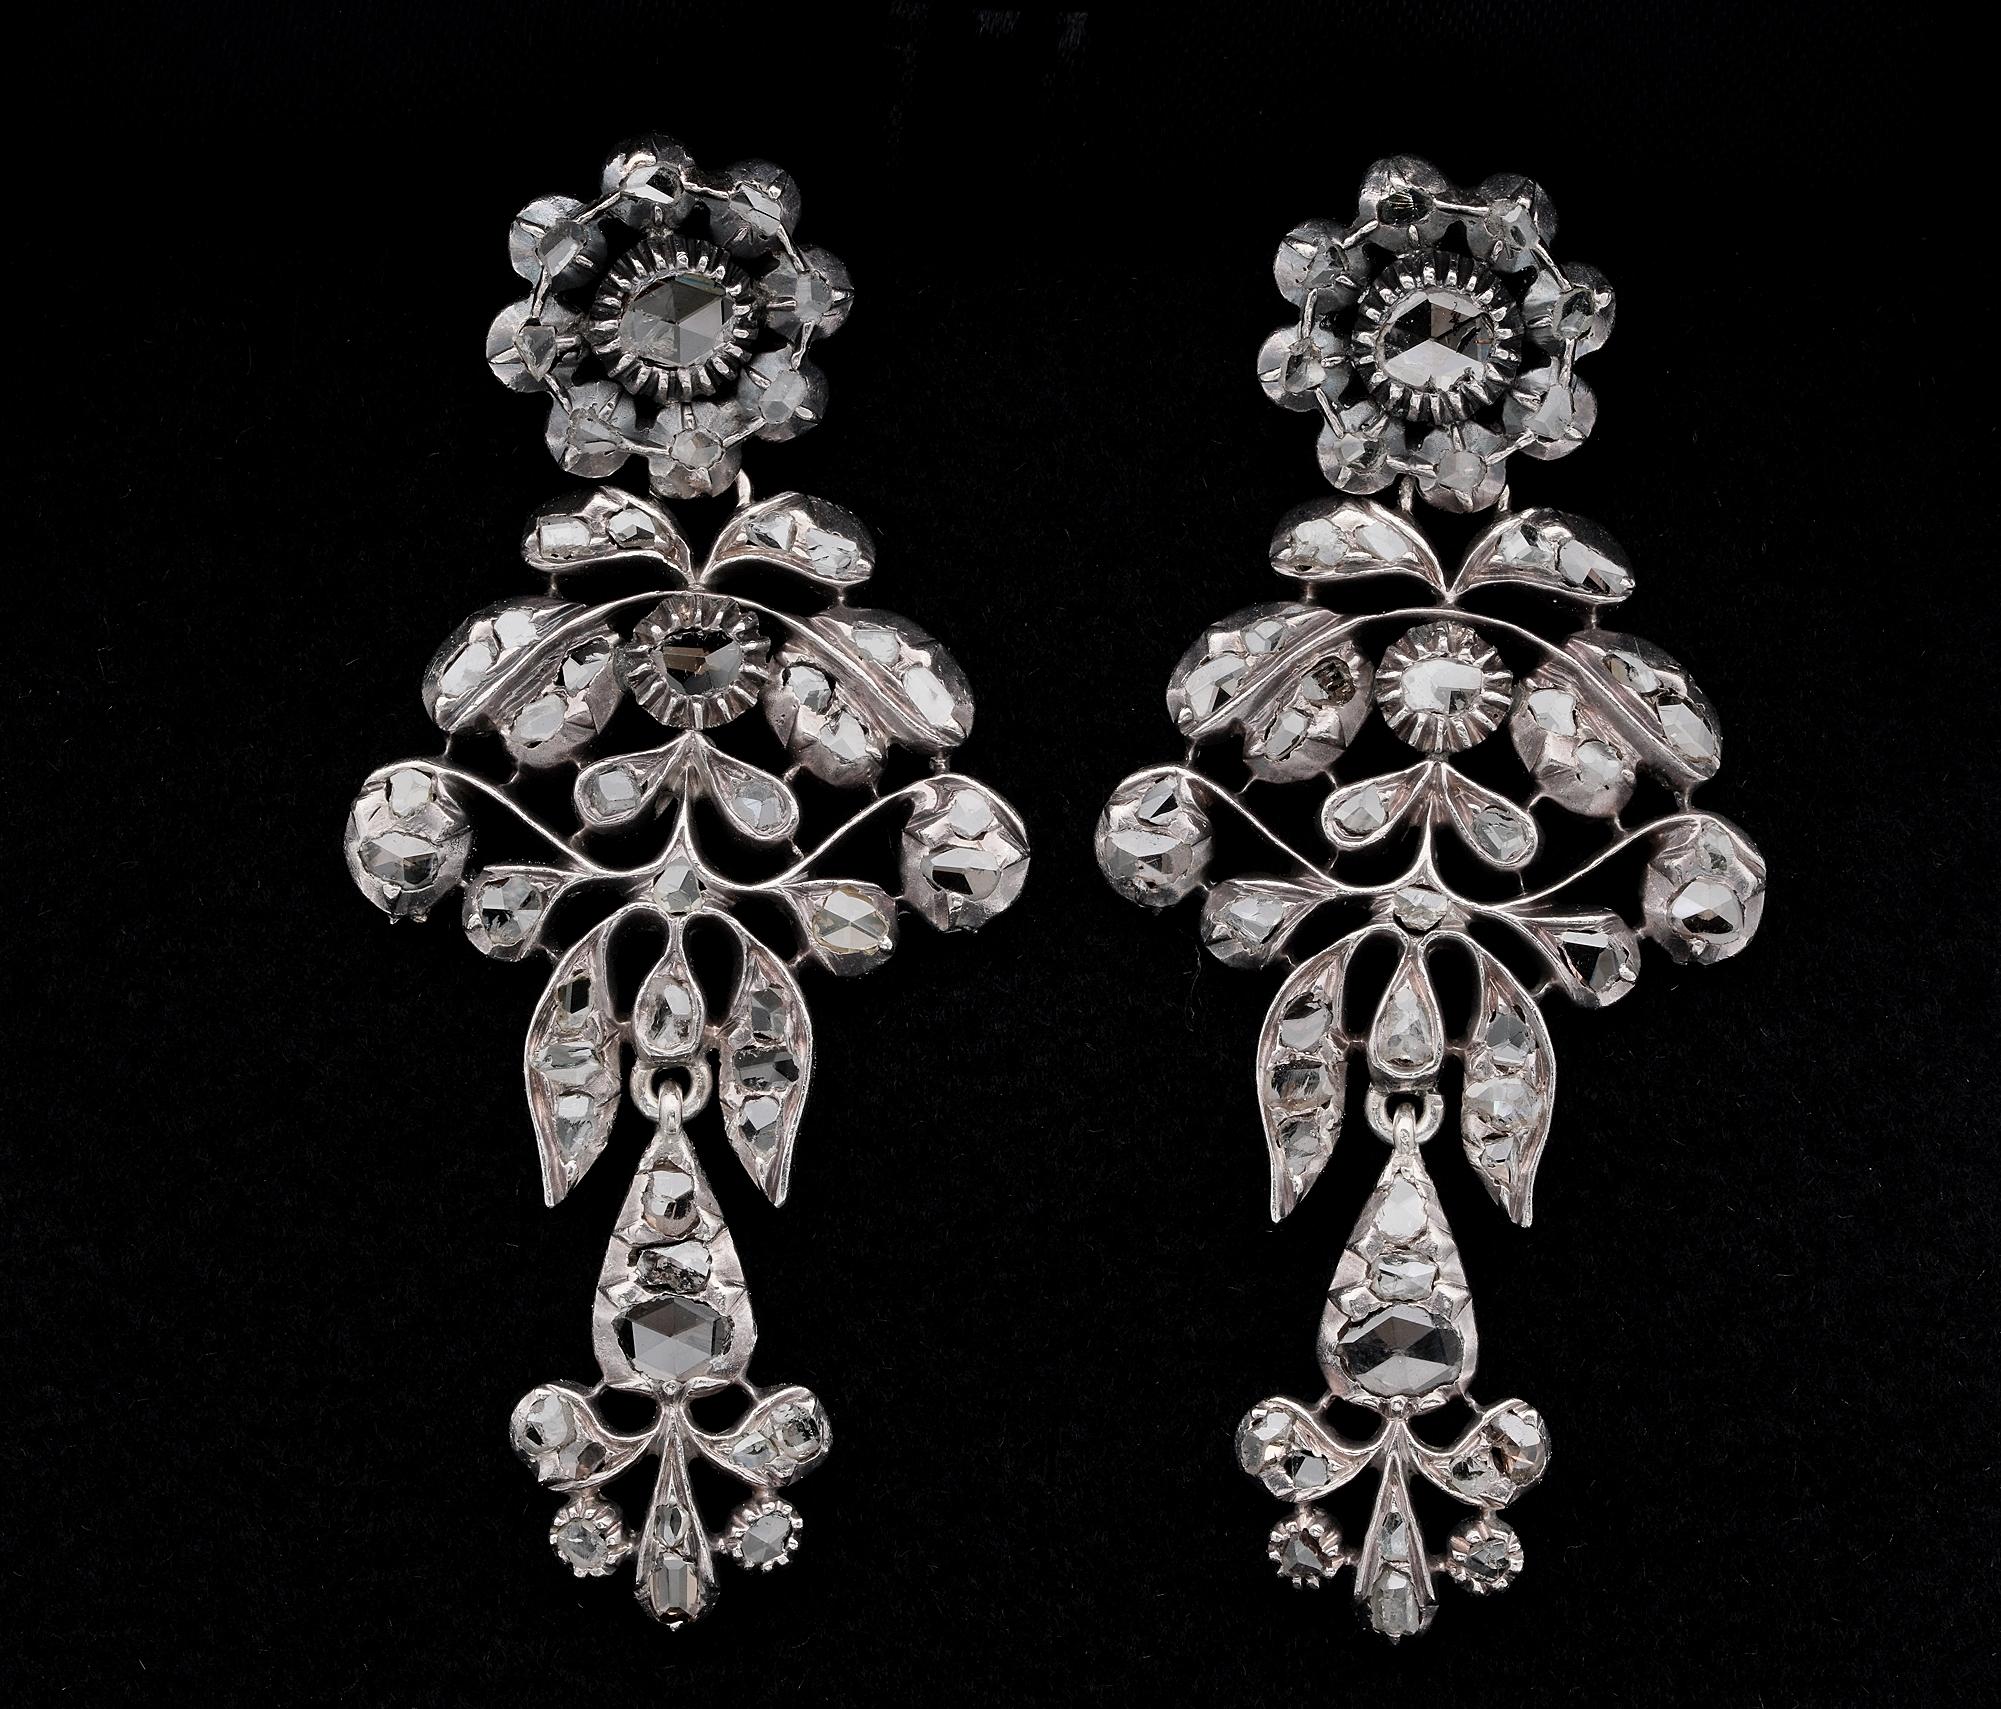 1790 ca.
18 Kt Gold gekrönt von Silber
Fabelhaftes durchbrochenes Rokoko-Giardinetti-Design, das von einem Blumenaufsatz abhängt, der von den georgischen Meistern in mühevoller Kleinarbeit gefertigt wurde, mit einer Auswahl von 92 Diamanten im